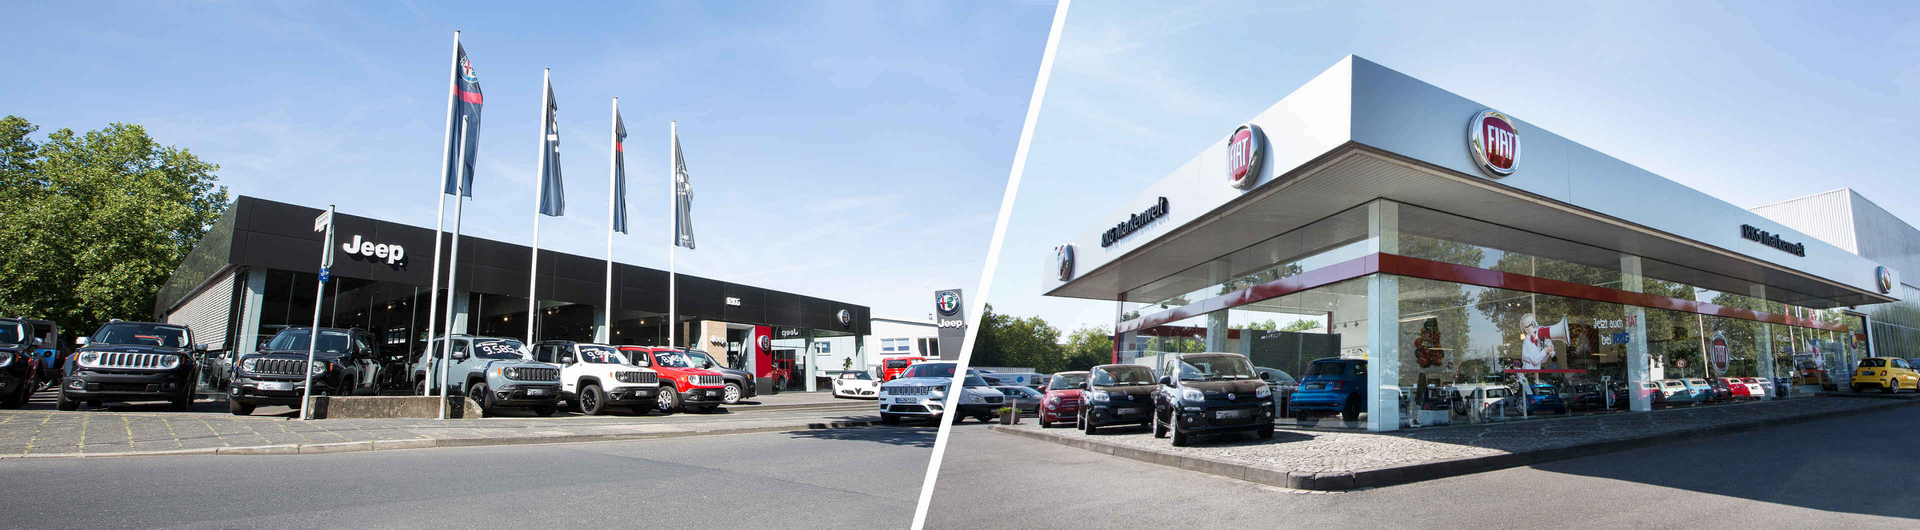 RKG Markenwelt - das Autohaus für Fiat, Abarth, Jeep und Alfa Romeo in Bonn-Beuel